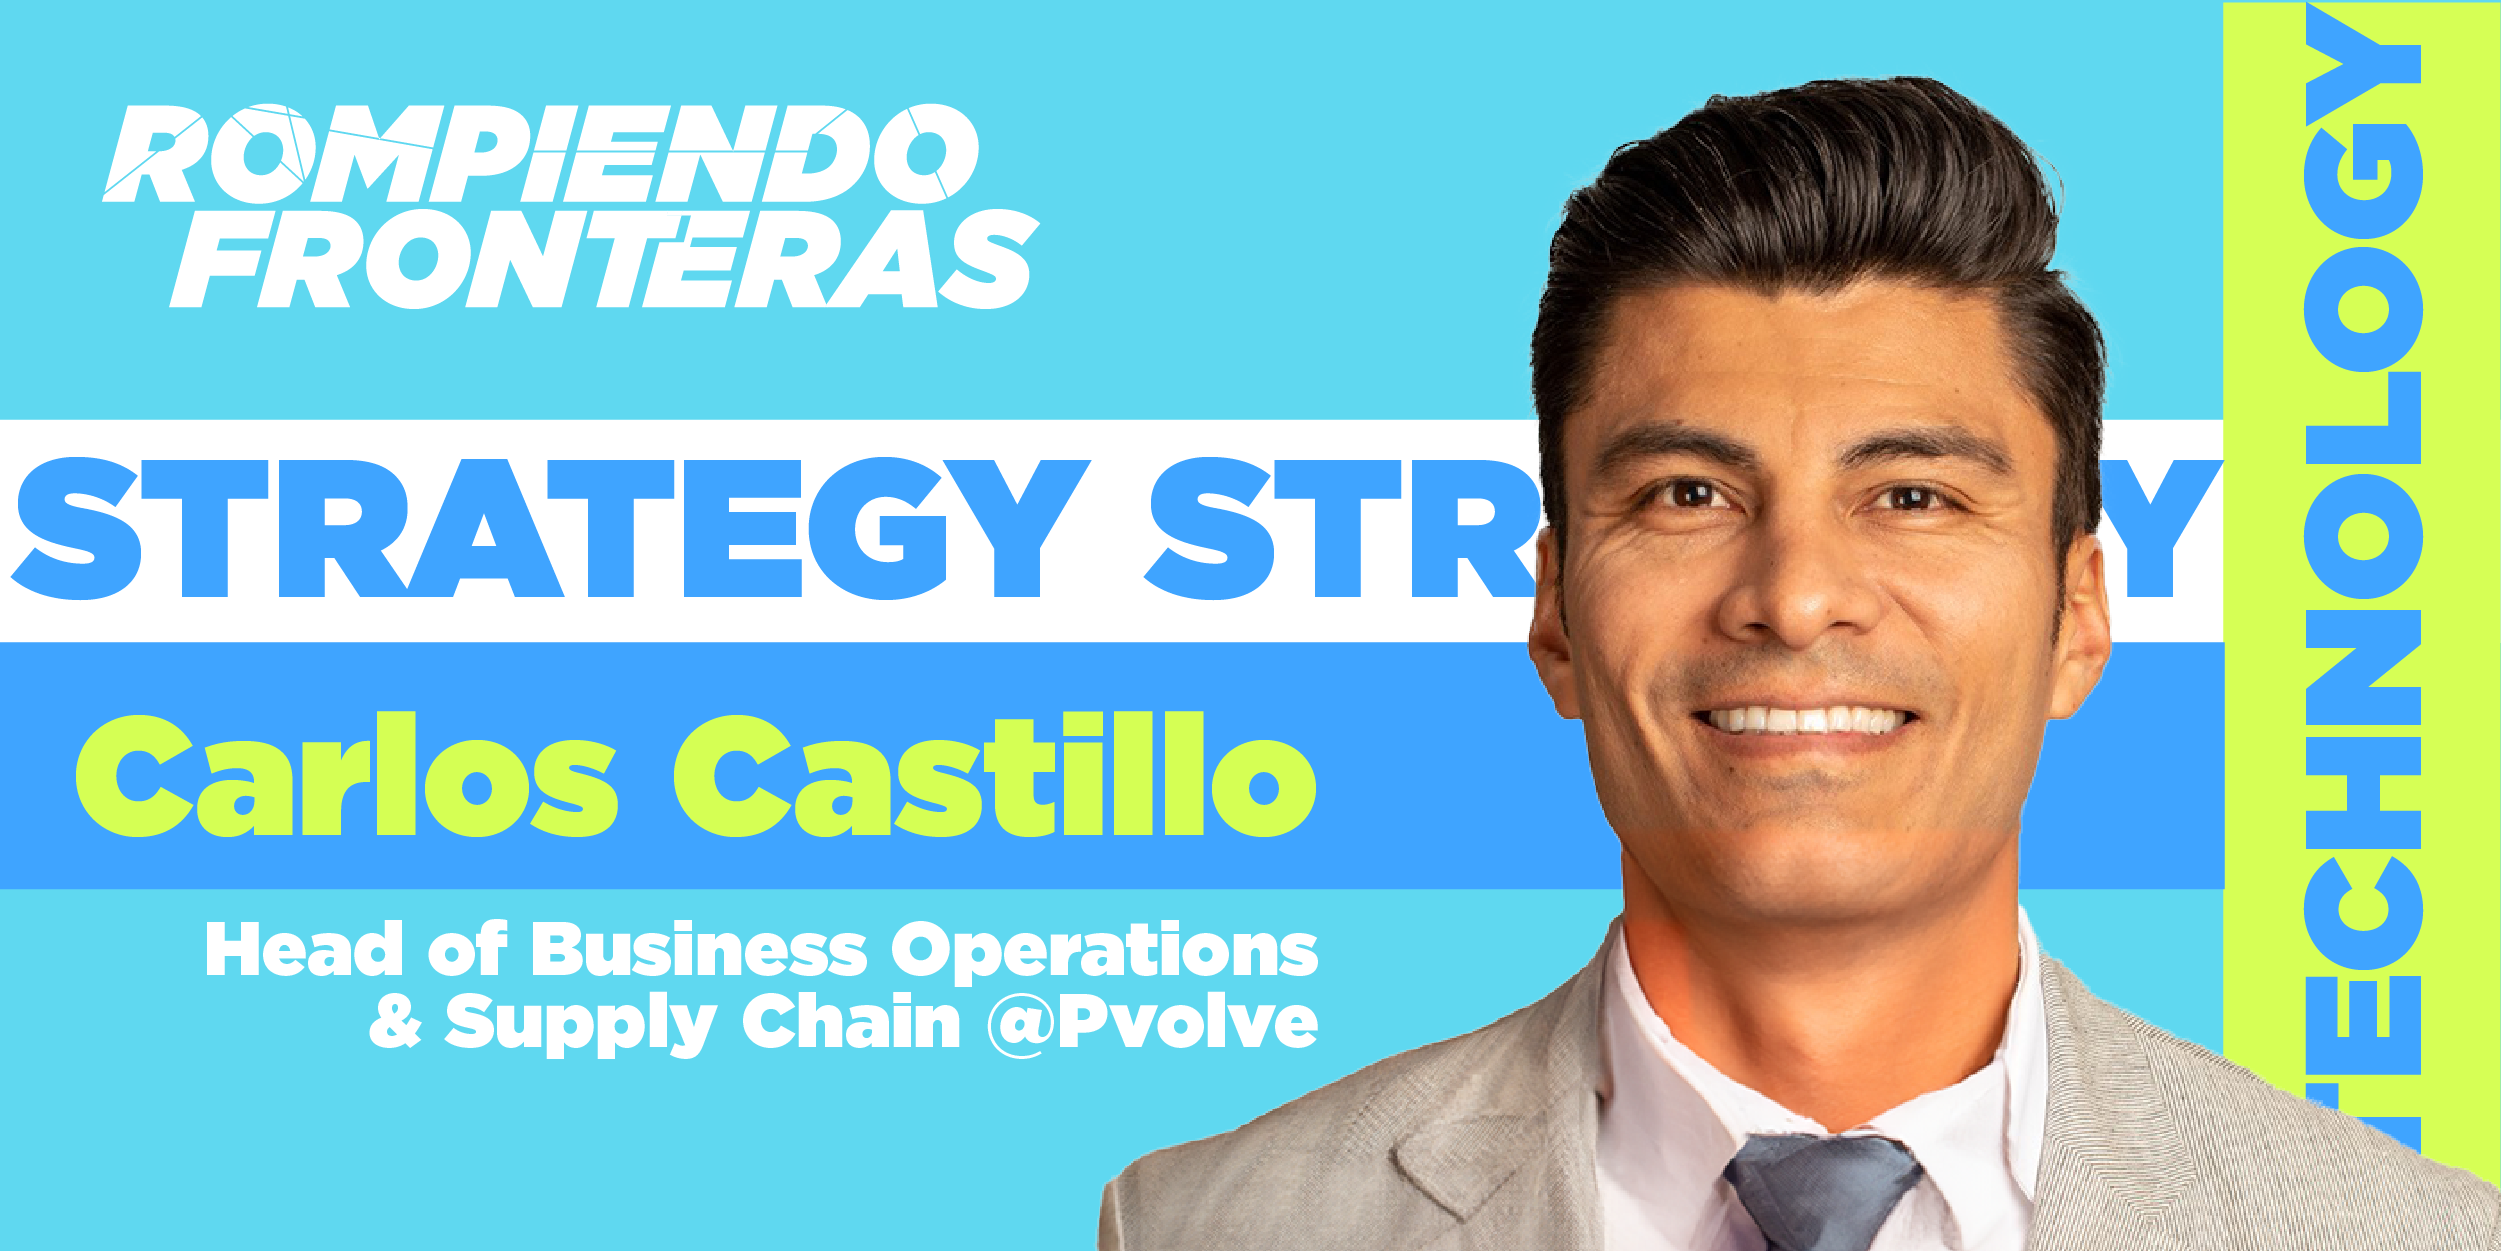  #RompiendoFronteras con Carlos Castillo: Cuando ser intencional lo cambia todo